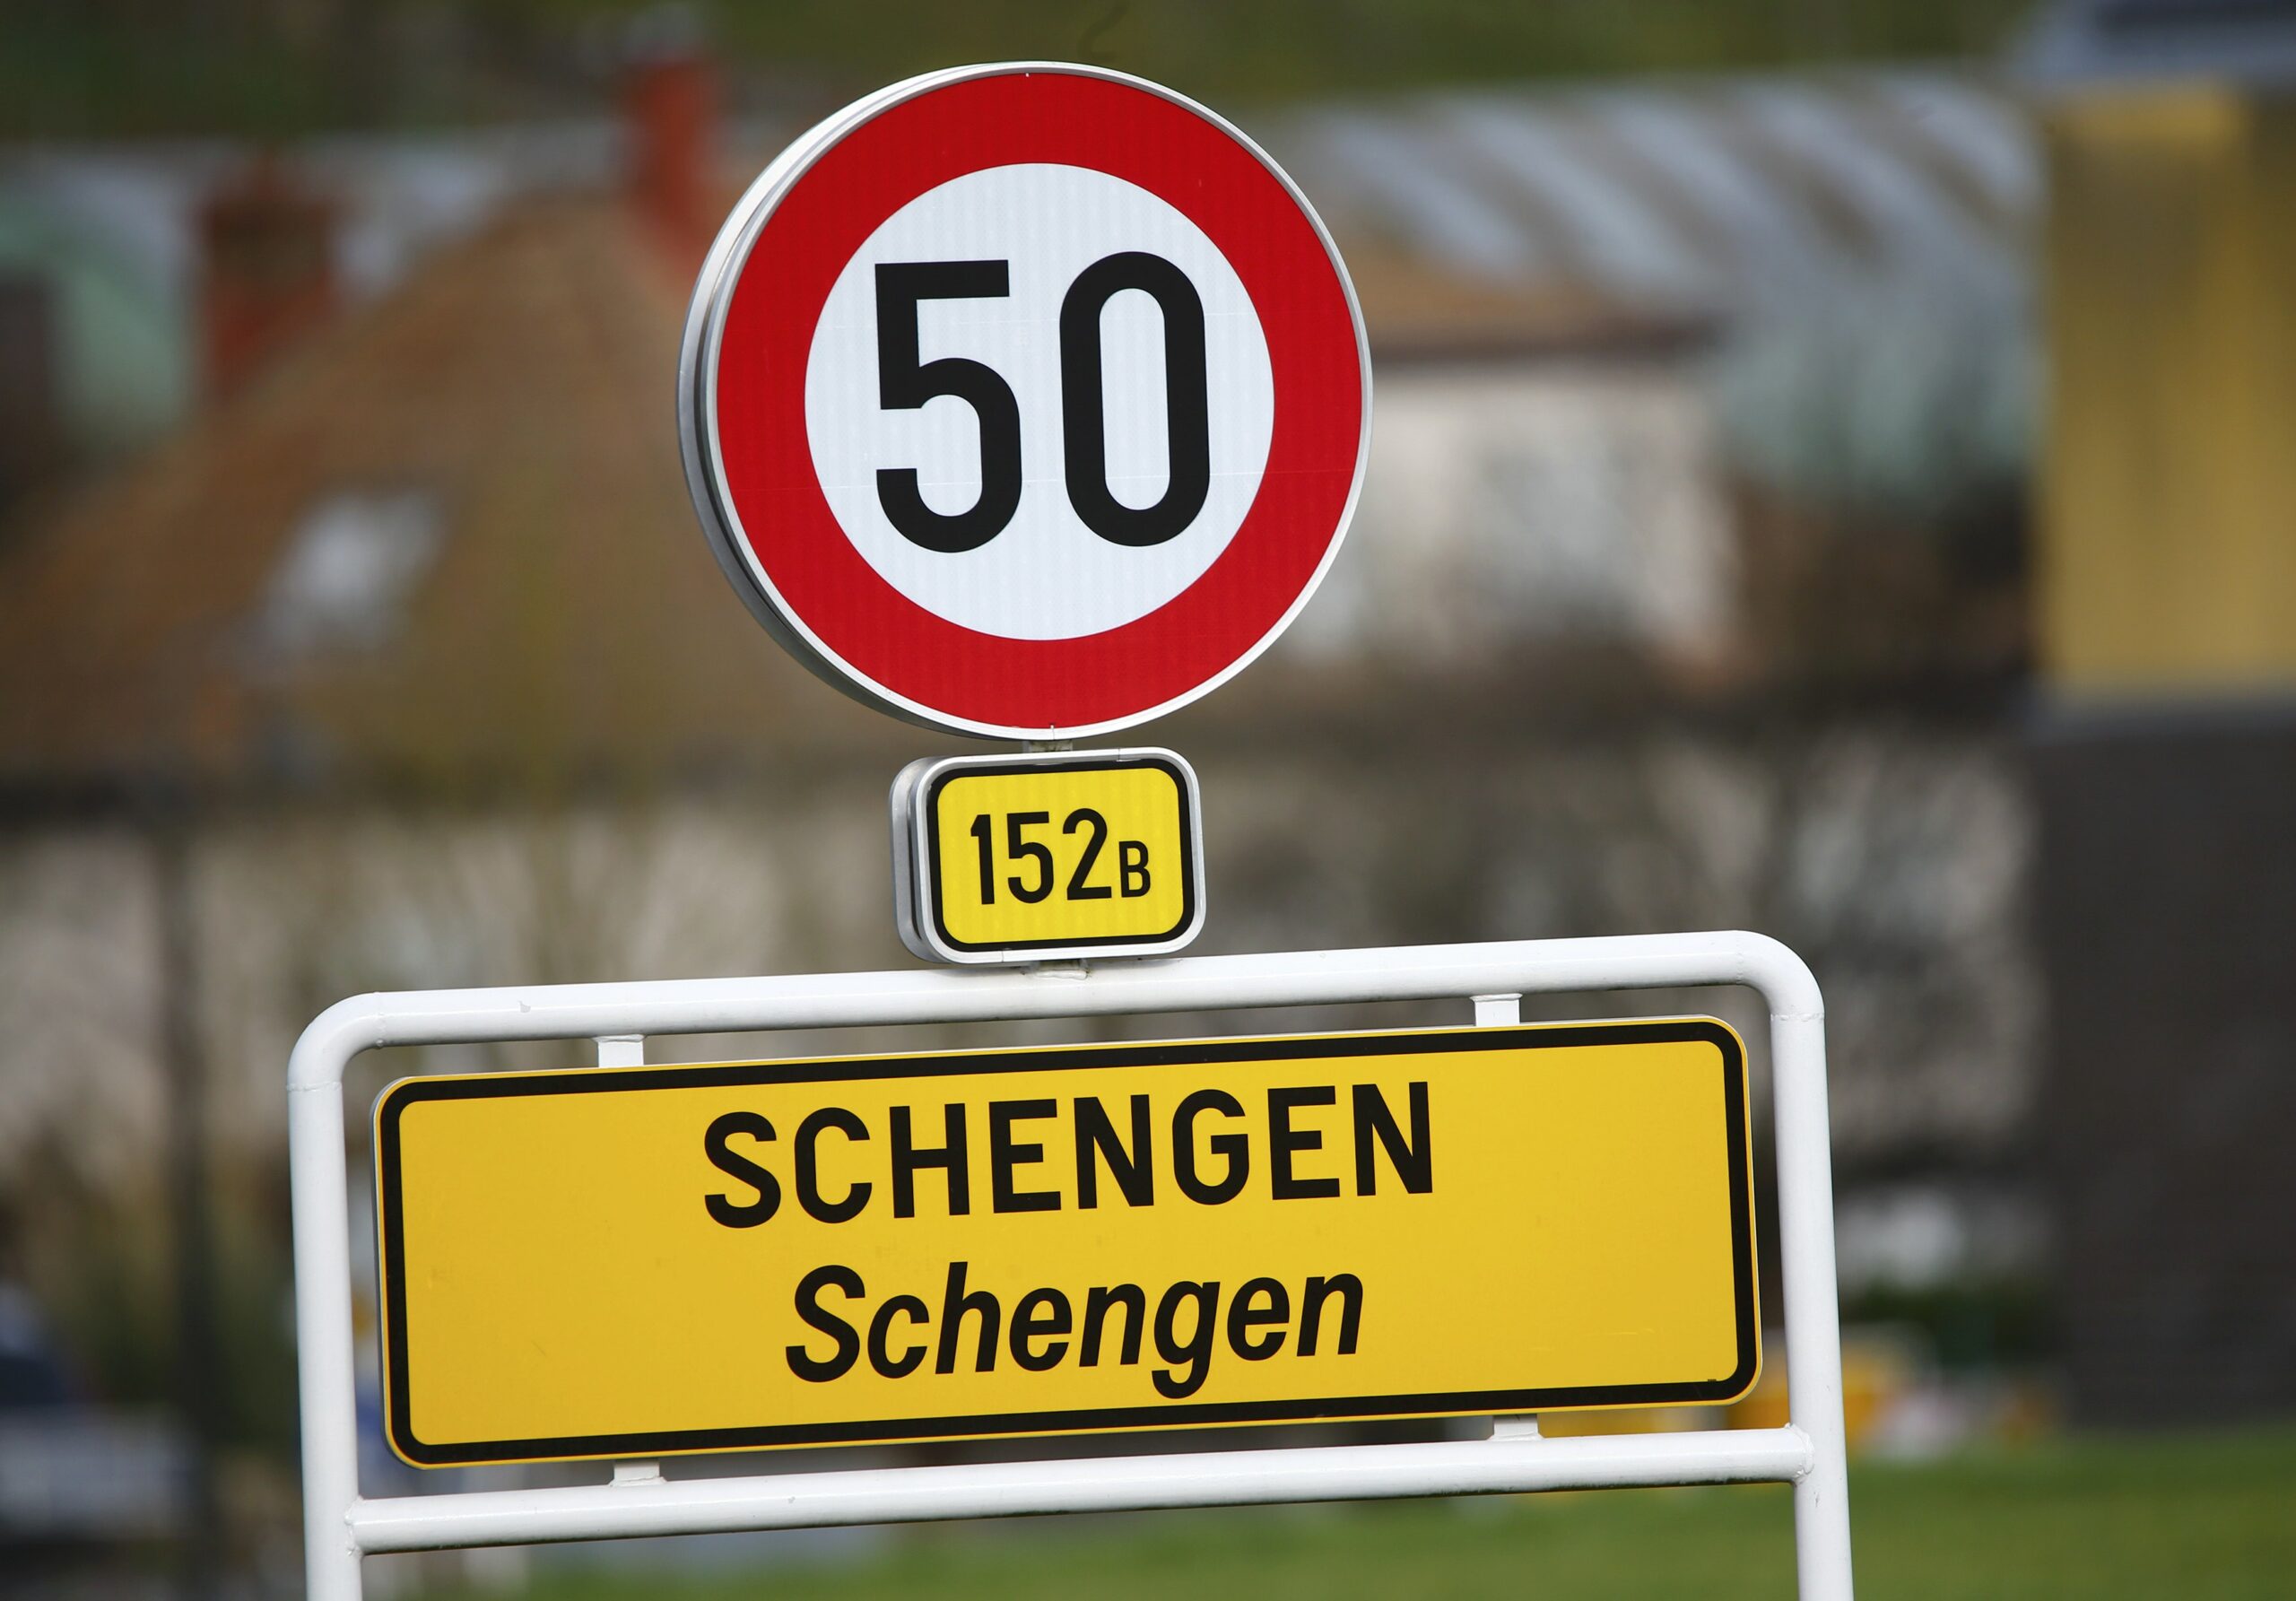 Schengen tamla na ulasku u prostor Schengena napisana velikim i malim slovima iznad znak za ograničenje brzine od 50 km/h u daljini kuće dan